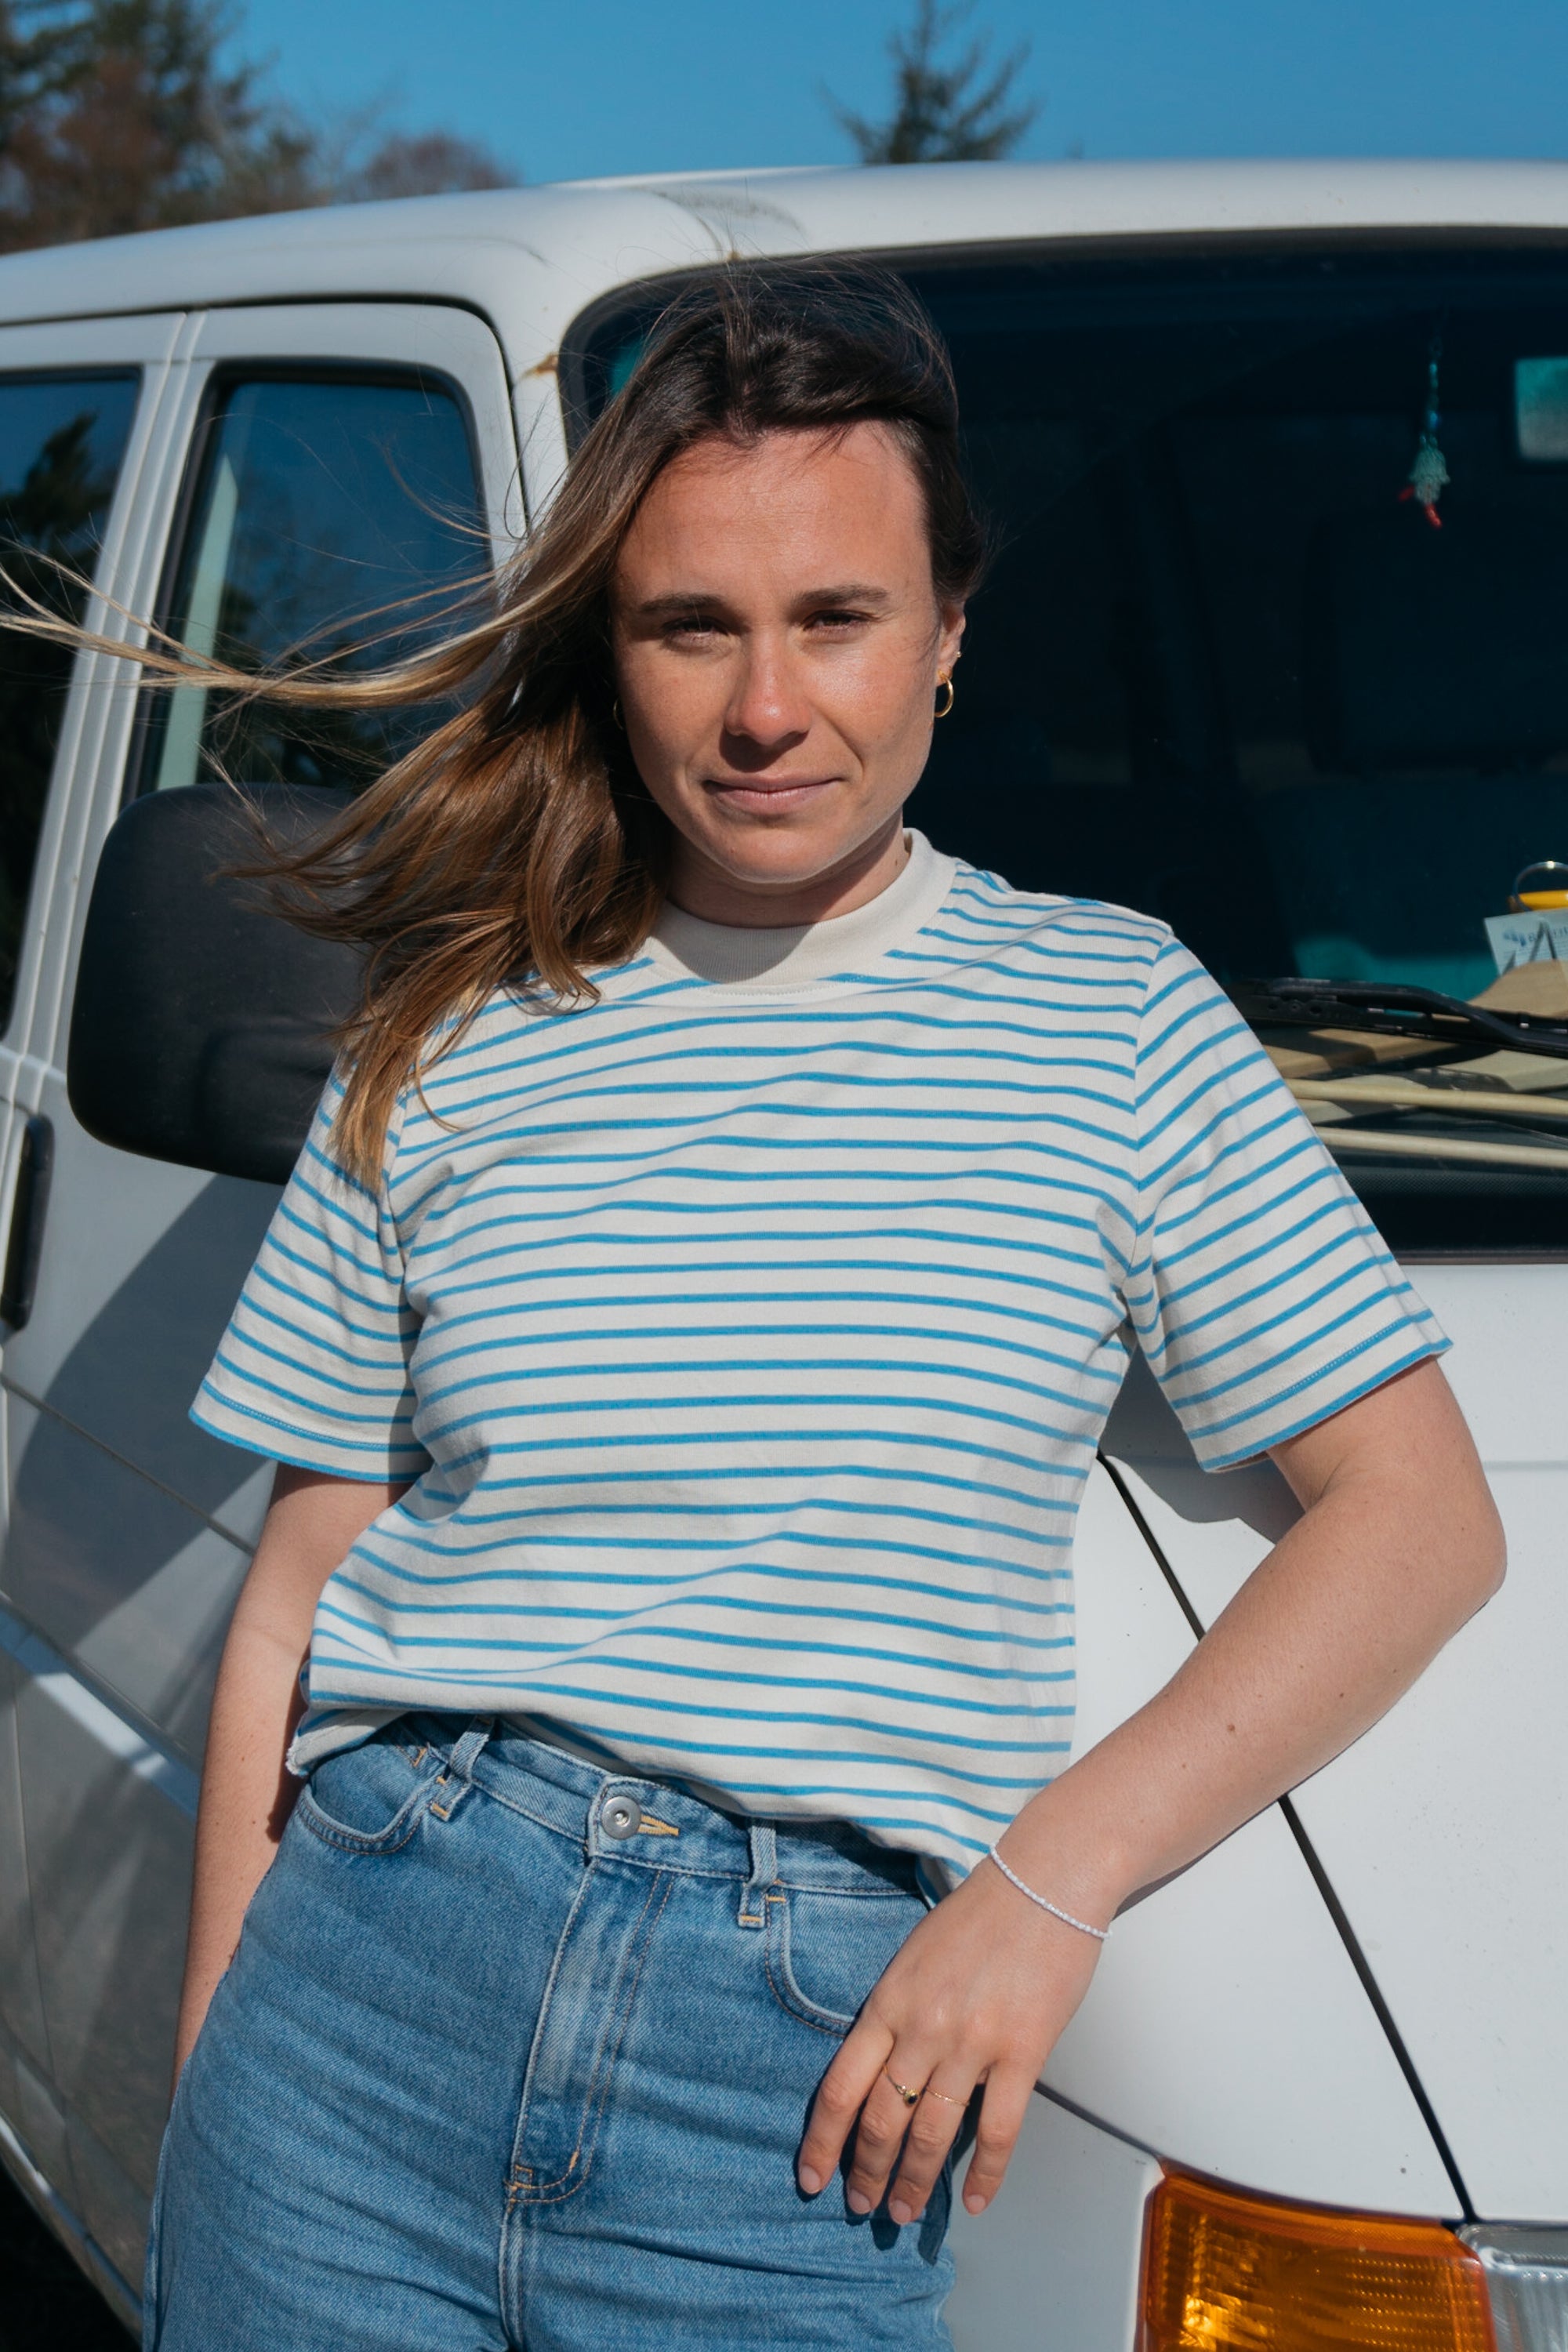 T-shirt épais Jonna Blue-Striped en coton biologique de Salzwasser